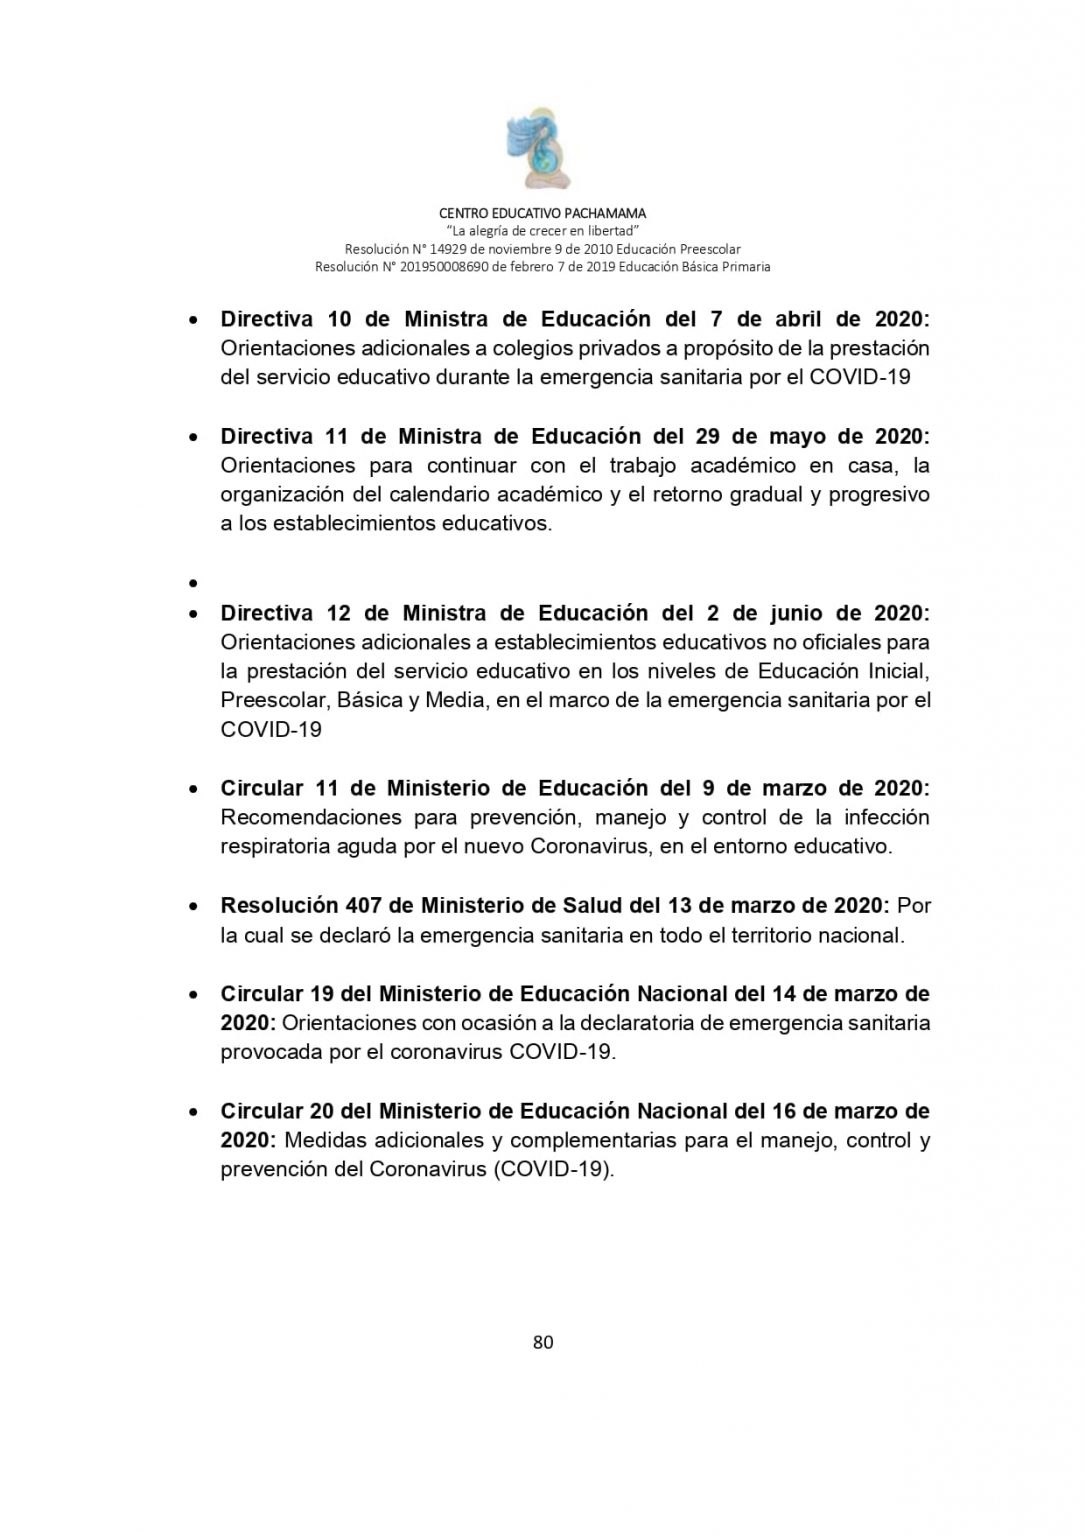 PROTOCOLO DE BIOSEGURIDAD PACHAMAMA Última Versión (3)-convertido_page-0080